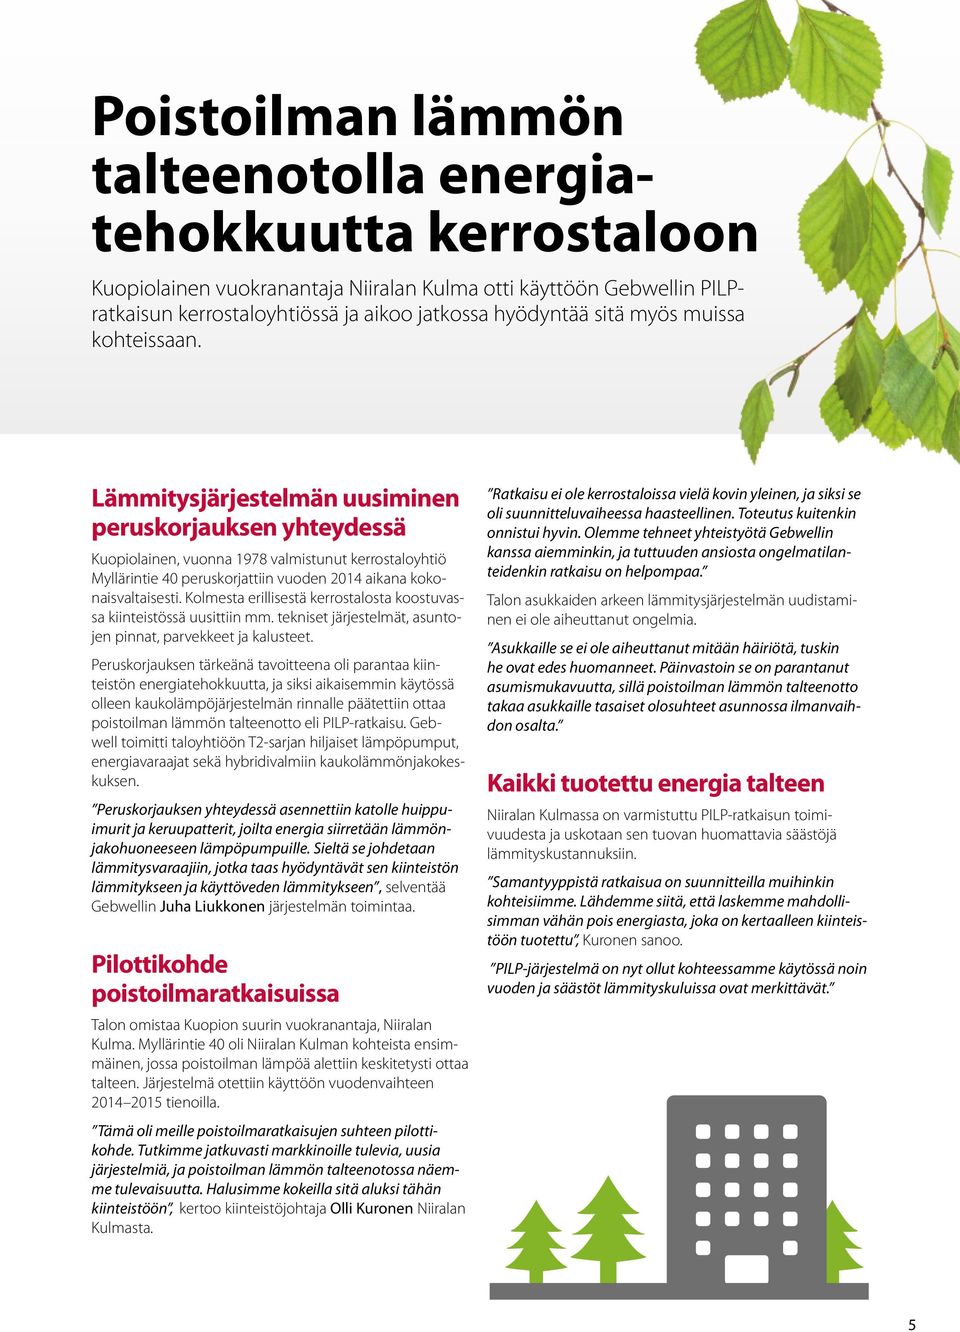 Lämmitysjärjestelmän uusiminen peruskorjauksen yhteydessä Kuopiolainen, vuonna 1978 valmistunut kerrostaloyhtiö Myllärintie 40 peruskorjattiin vuoden 2014 aikana kokonaisvaltaisesti.